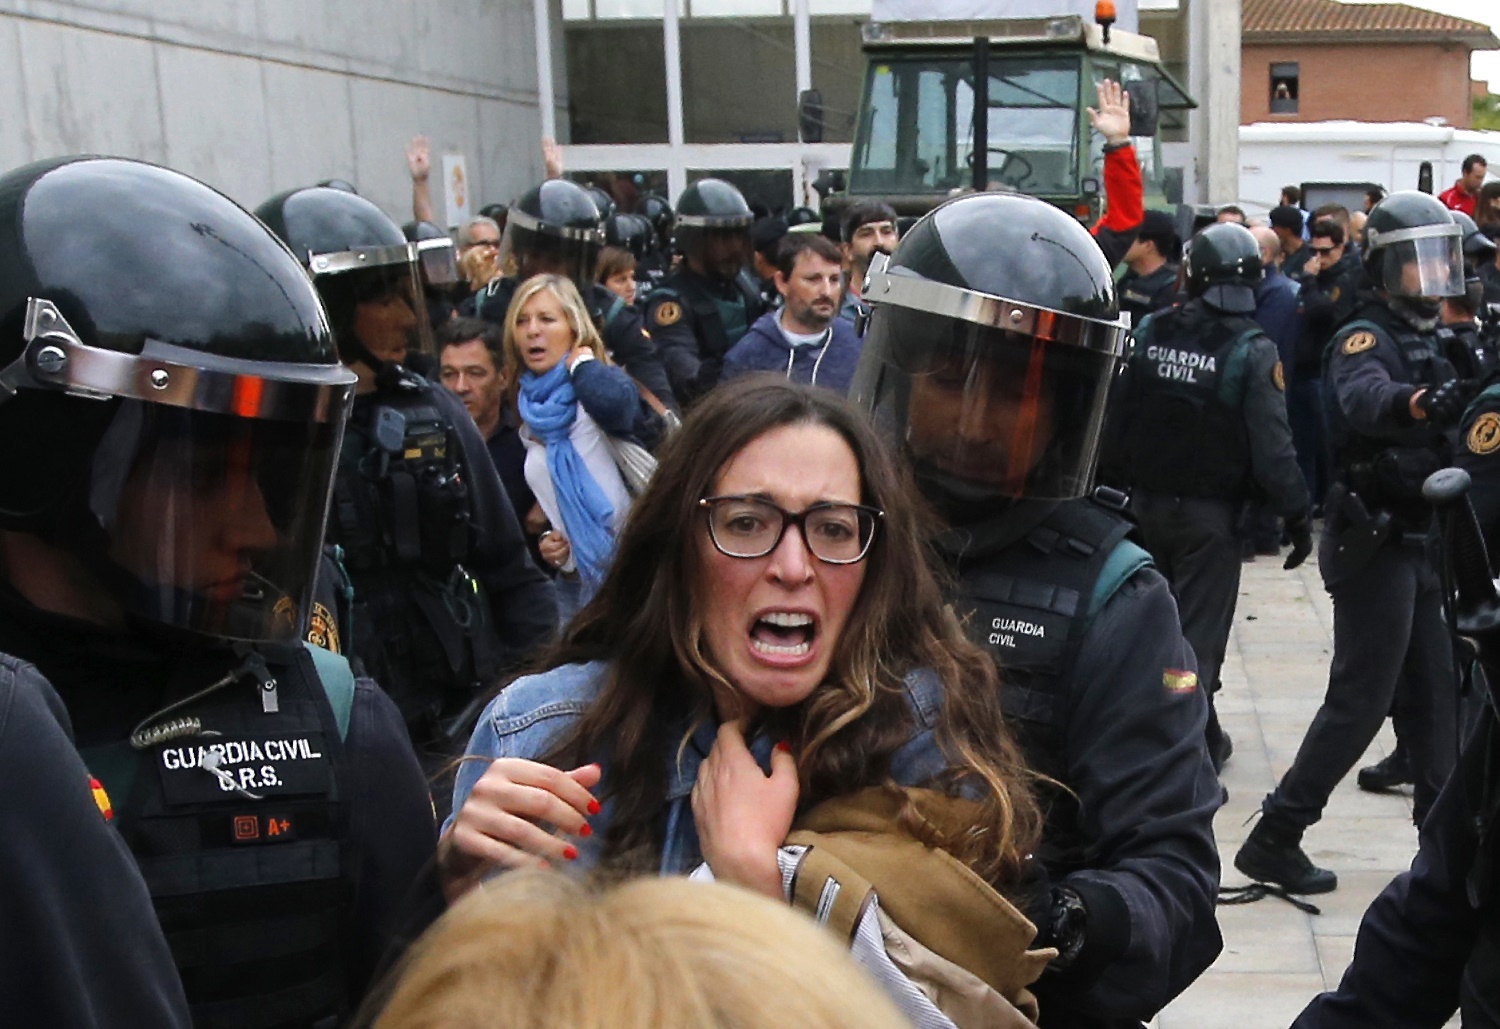 Fuerte represión policial en Cataluña durante referéndum de independencia (Fotos y Videos)